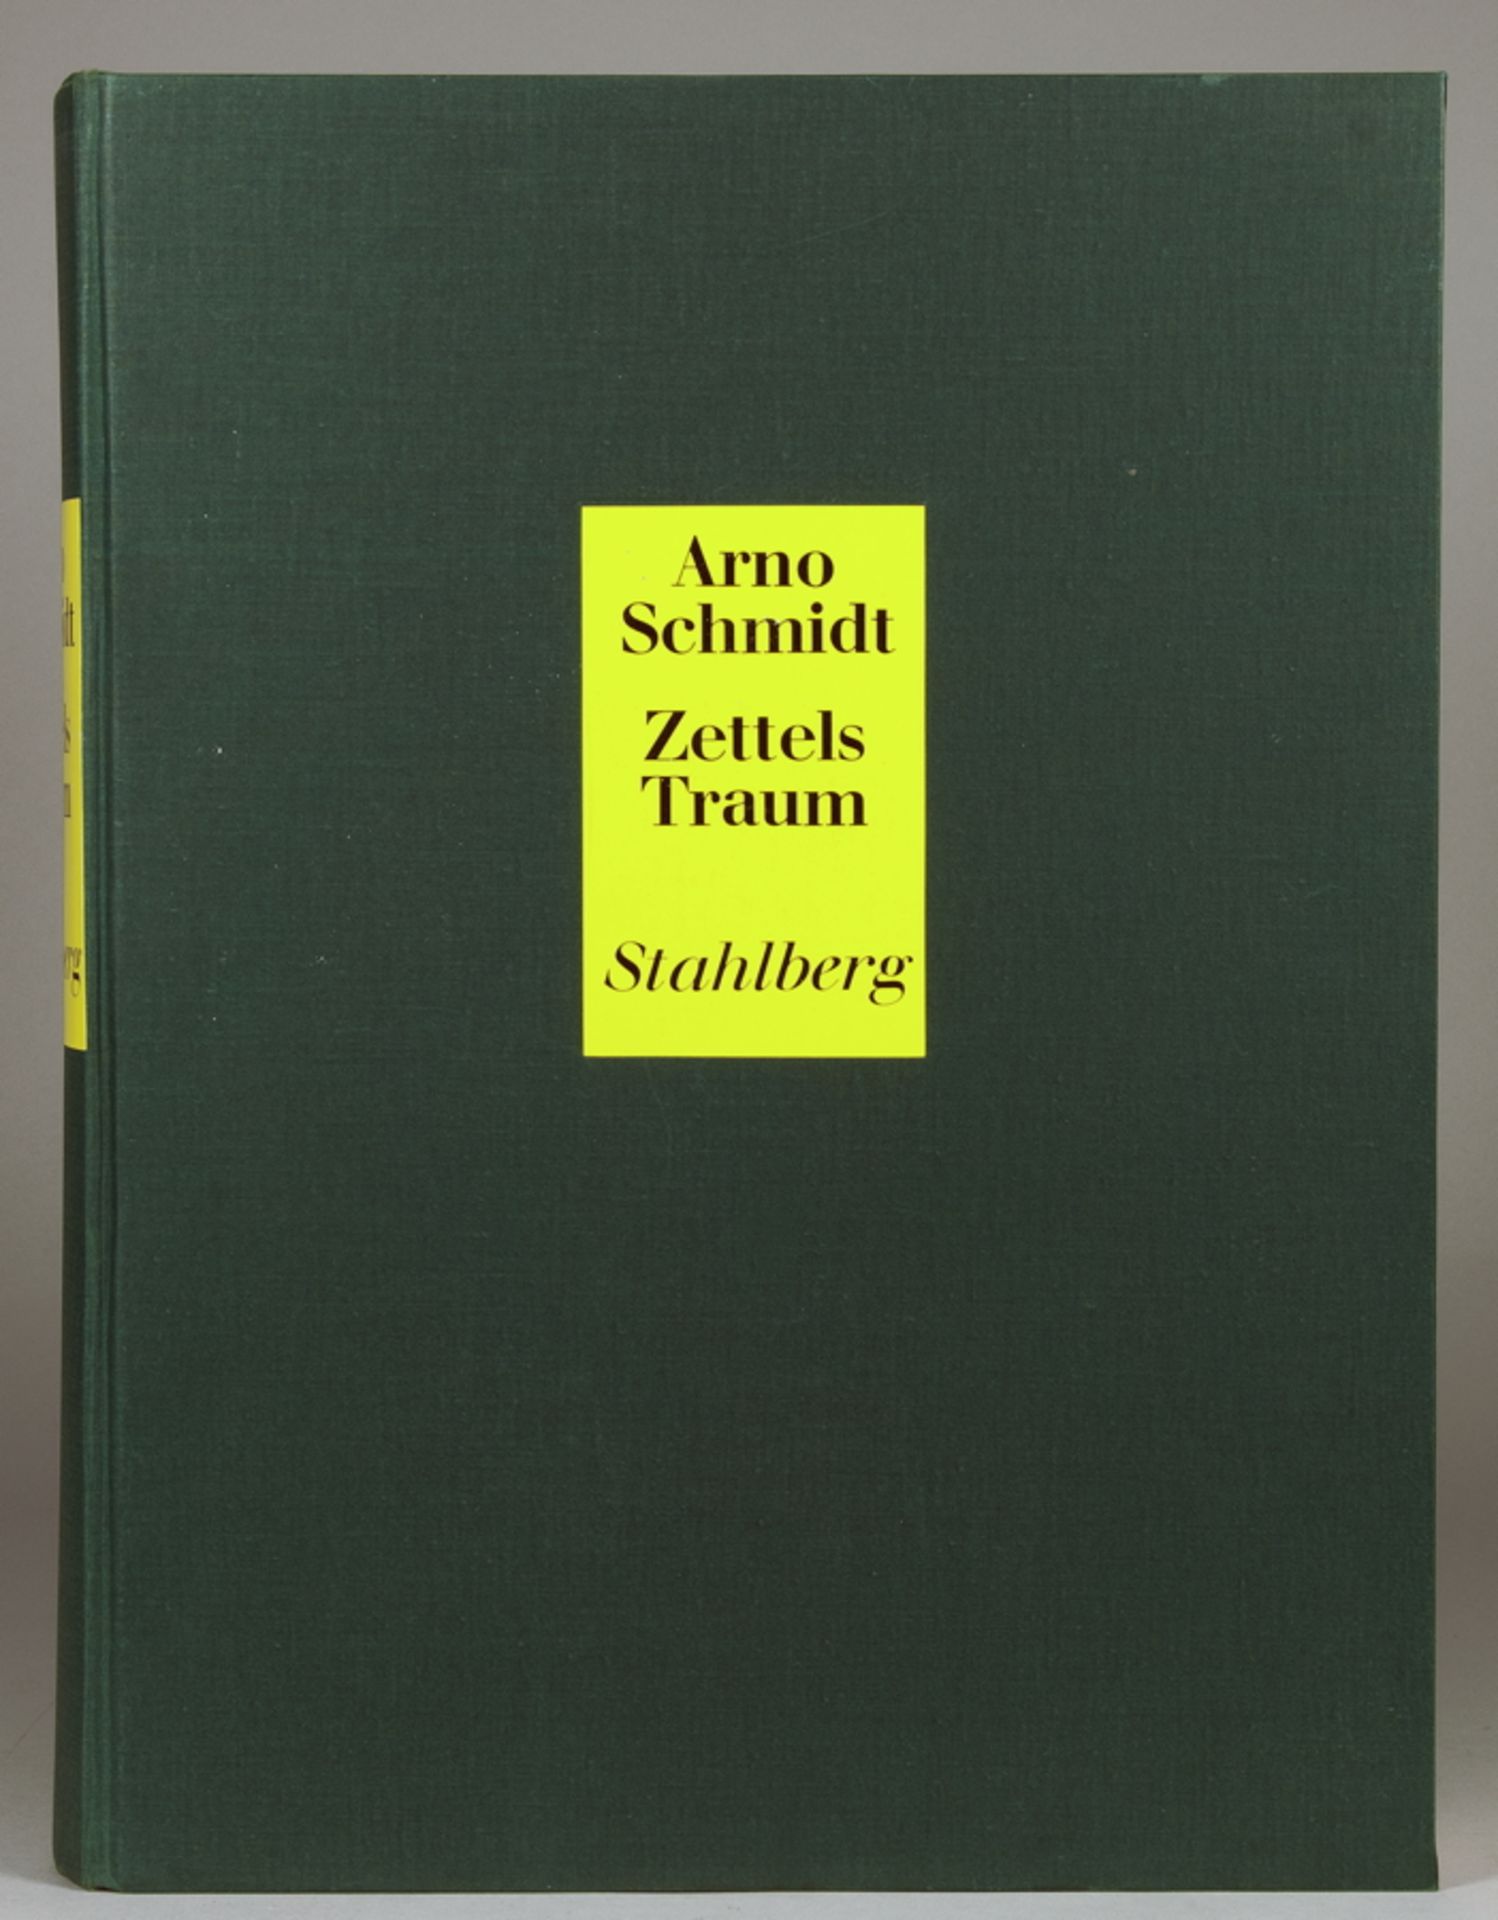 Arno Schmidt. Zettels Traum. [Stuttgart, Goverts Krüger] Stahlberg 1970. Dunkelgrüner